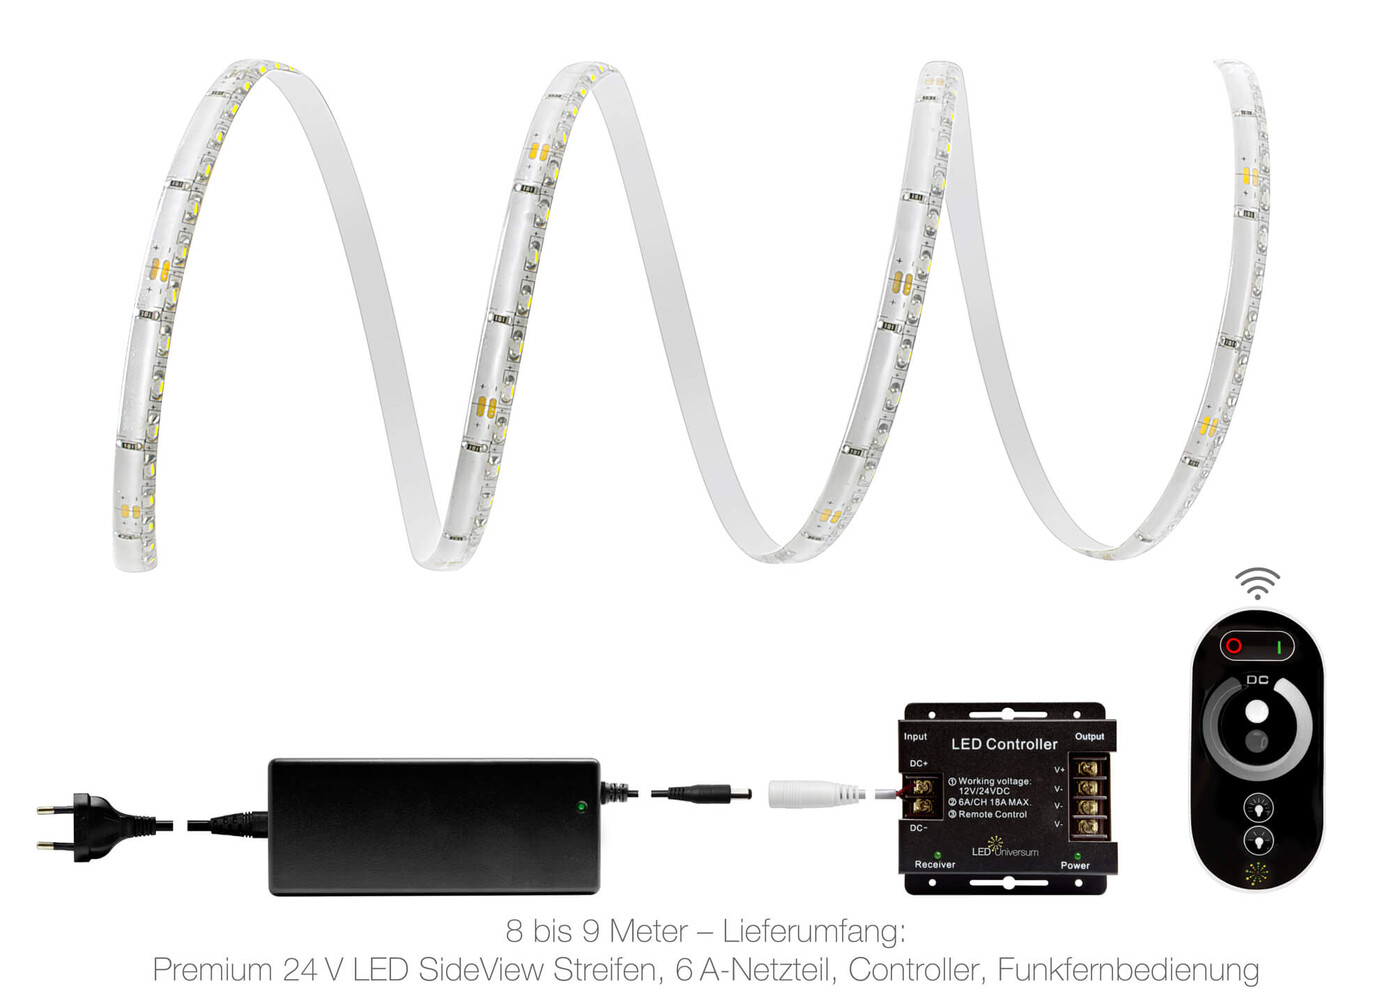 Premium kaltweißer LED Streifen von LED Universum, ideal für eine helle und energieeffiziente Beleuchtung